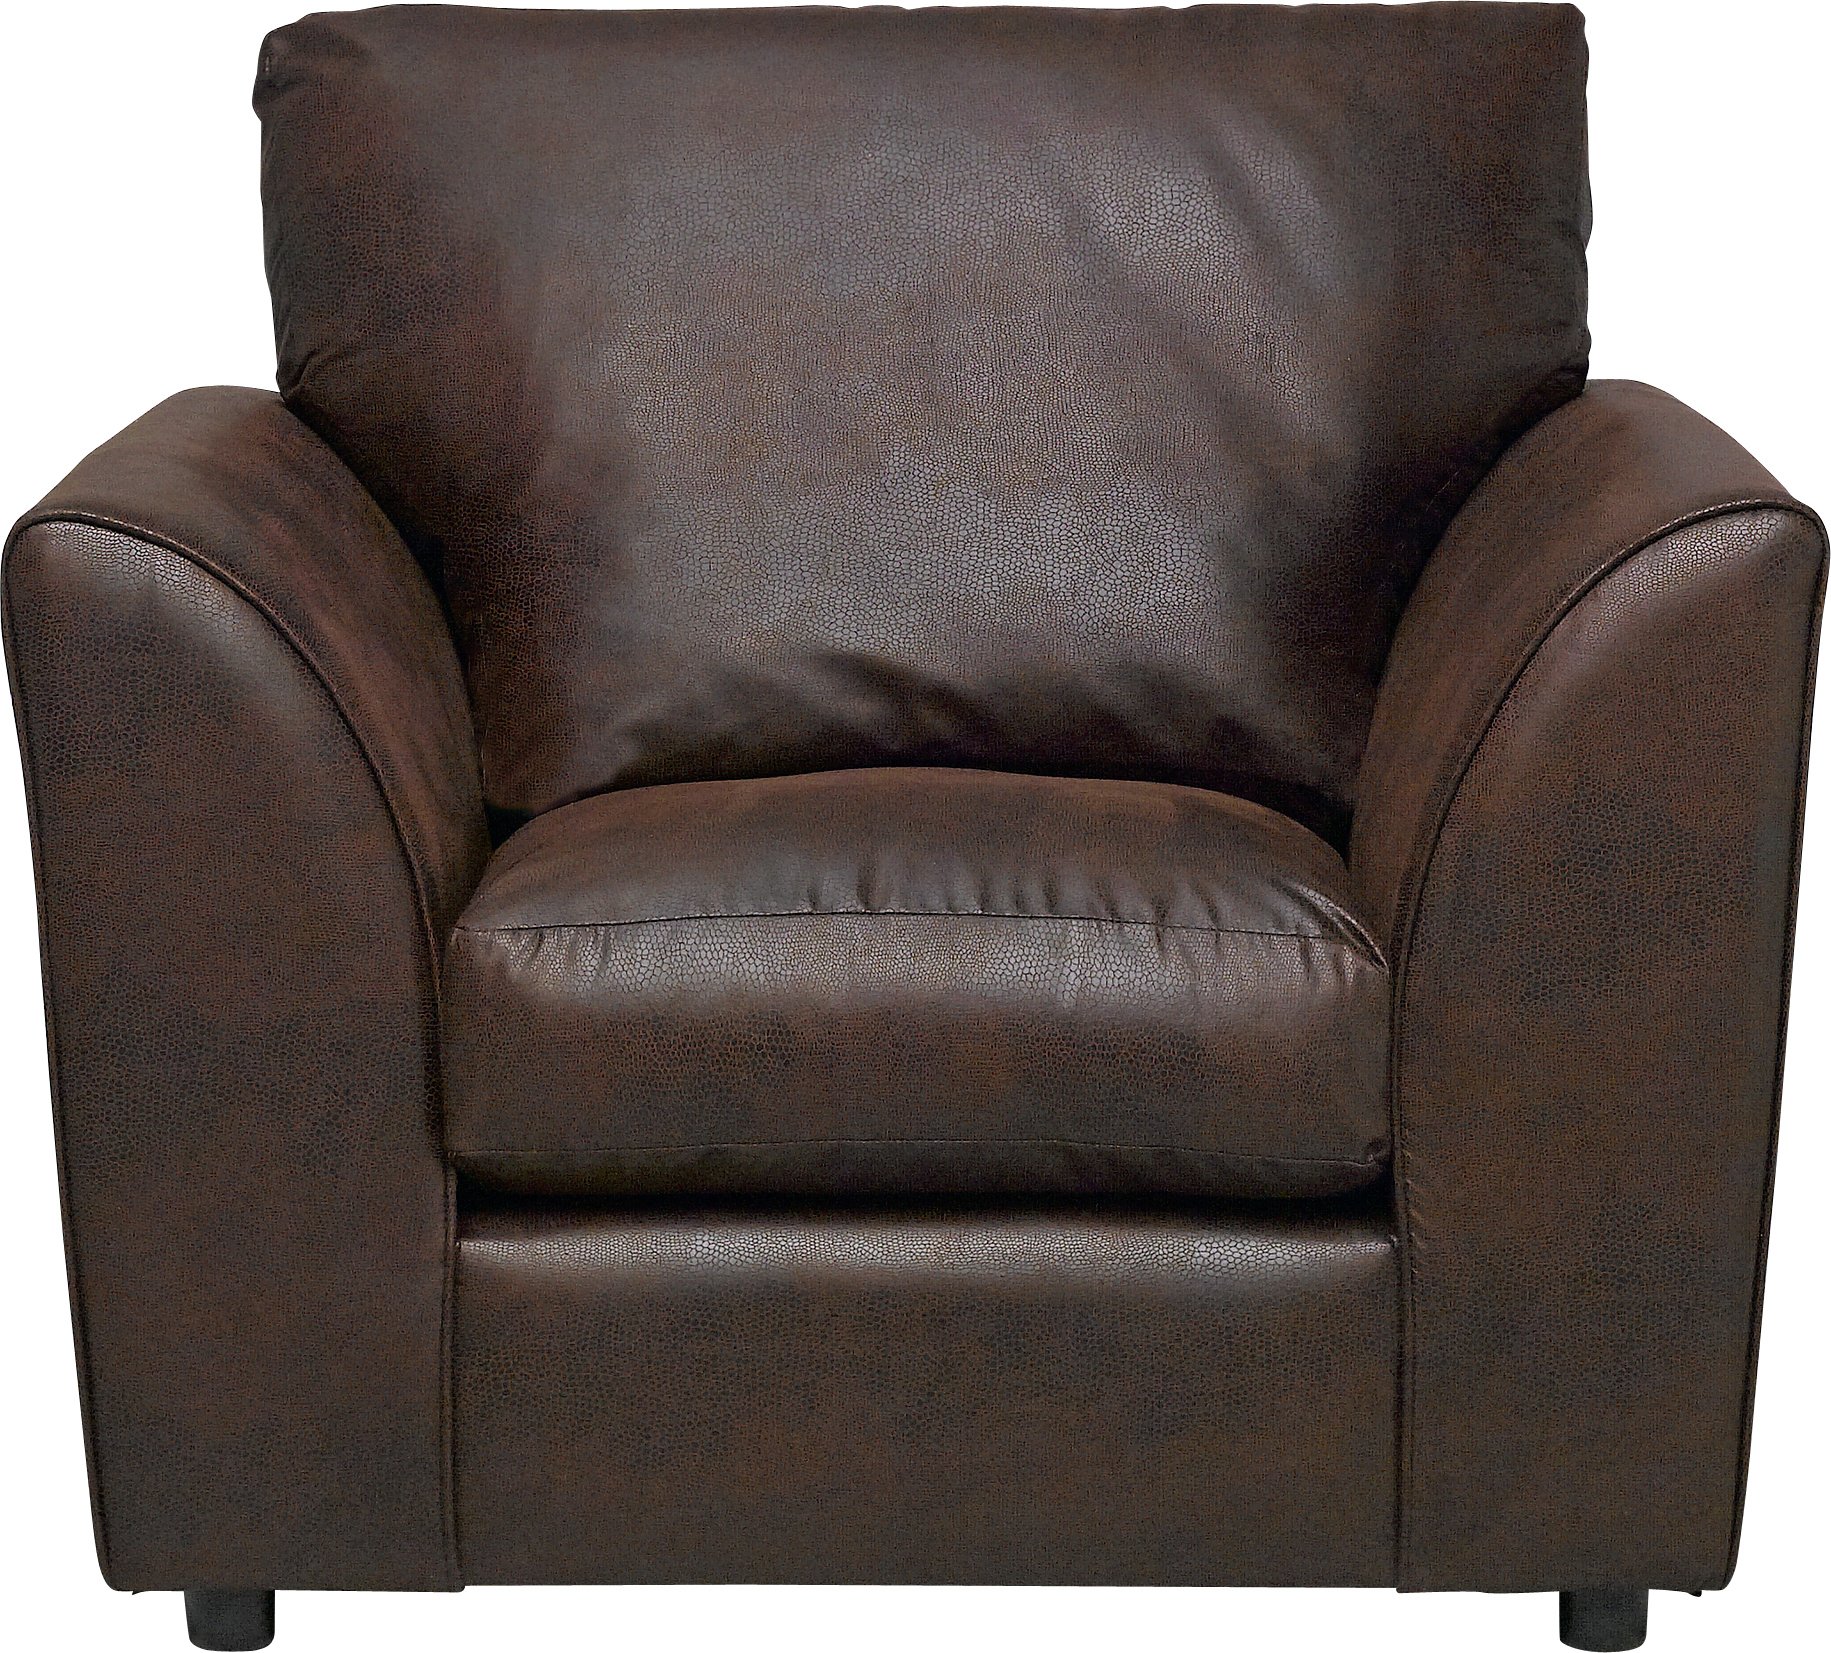 Argos Home New Alfie Leather Effect Chair - Dark Brown